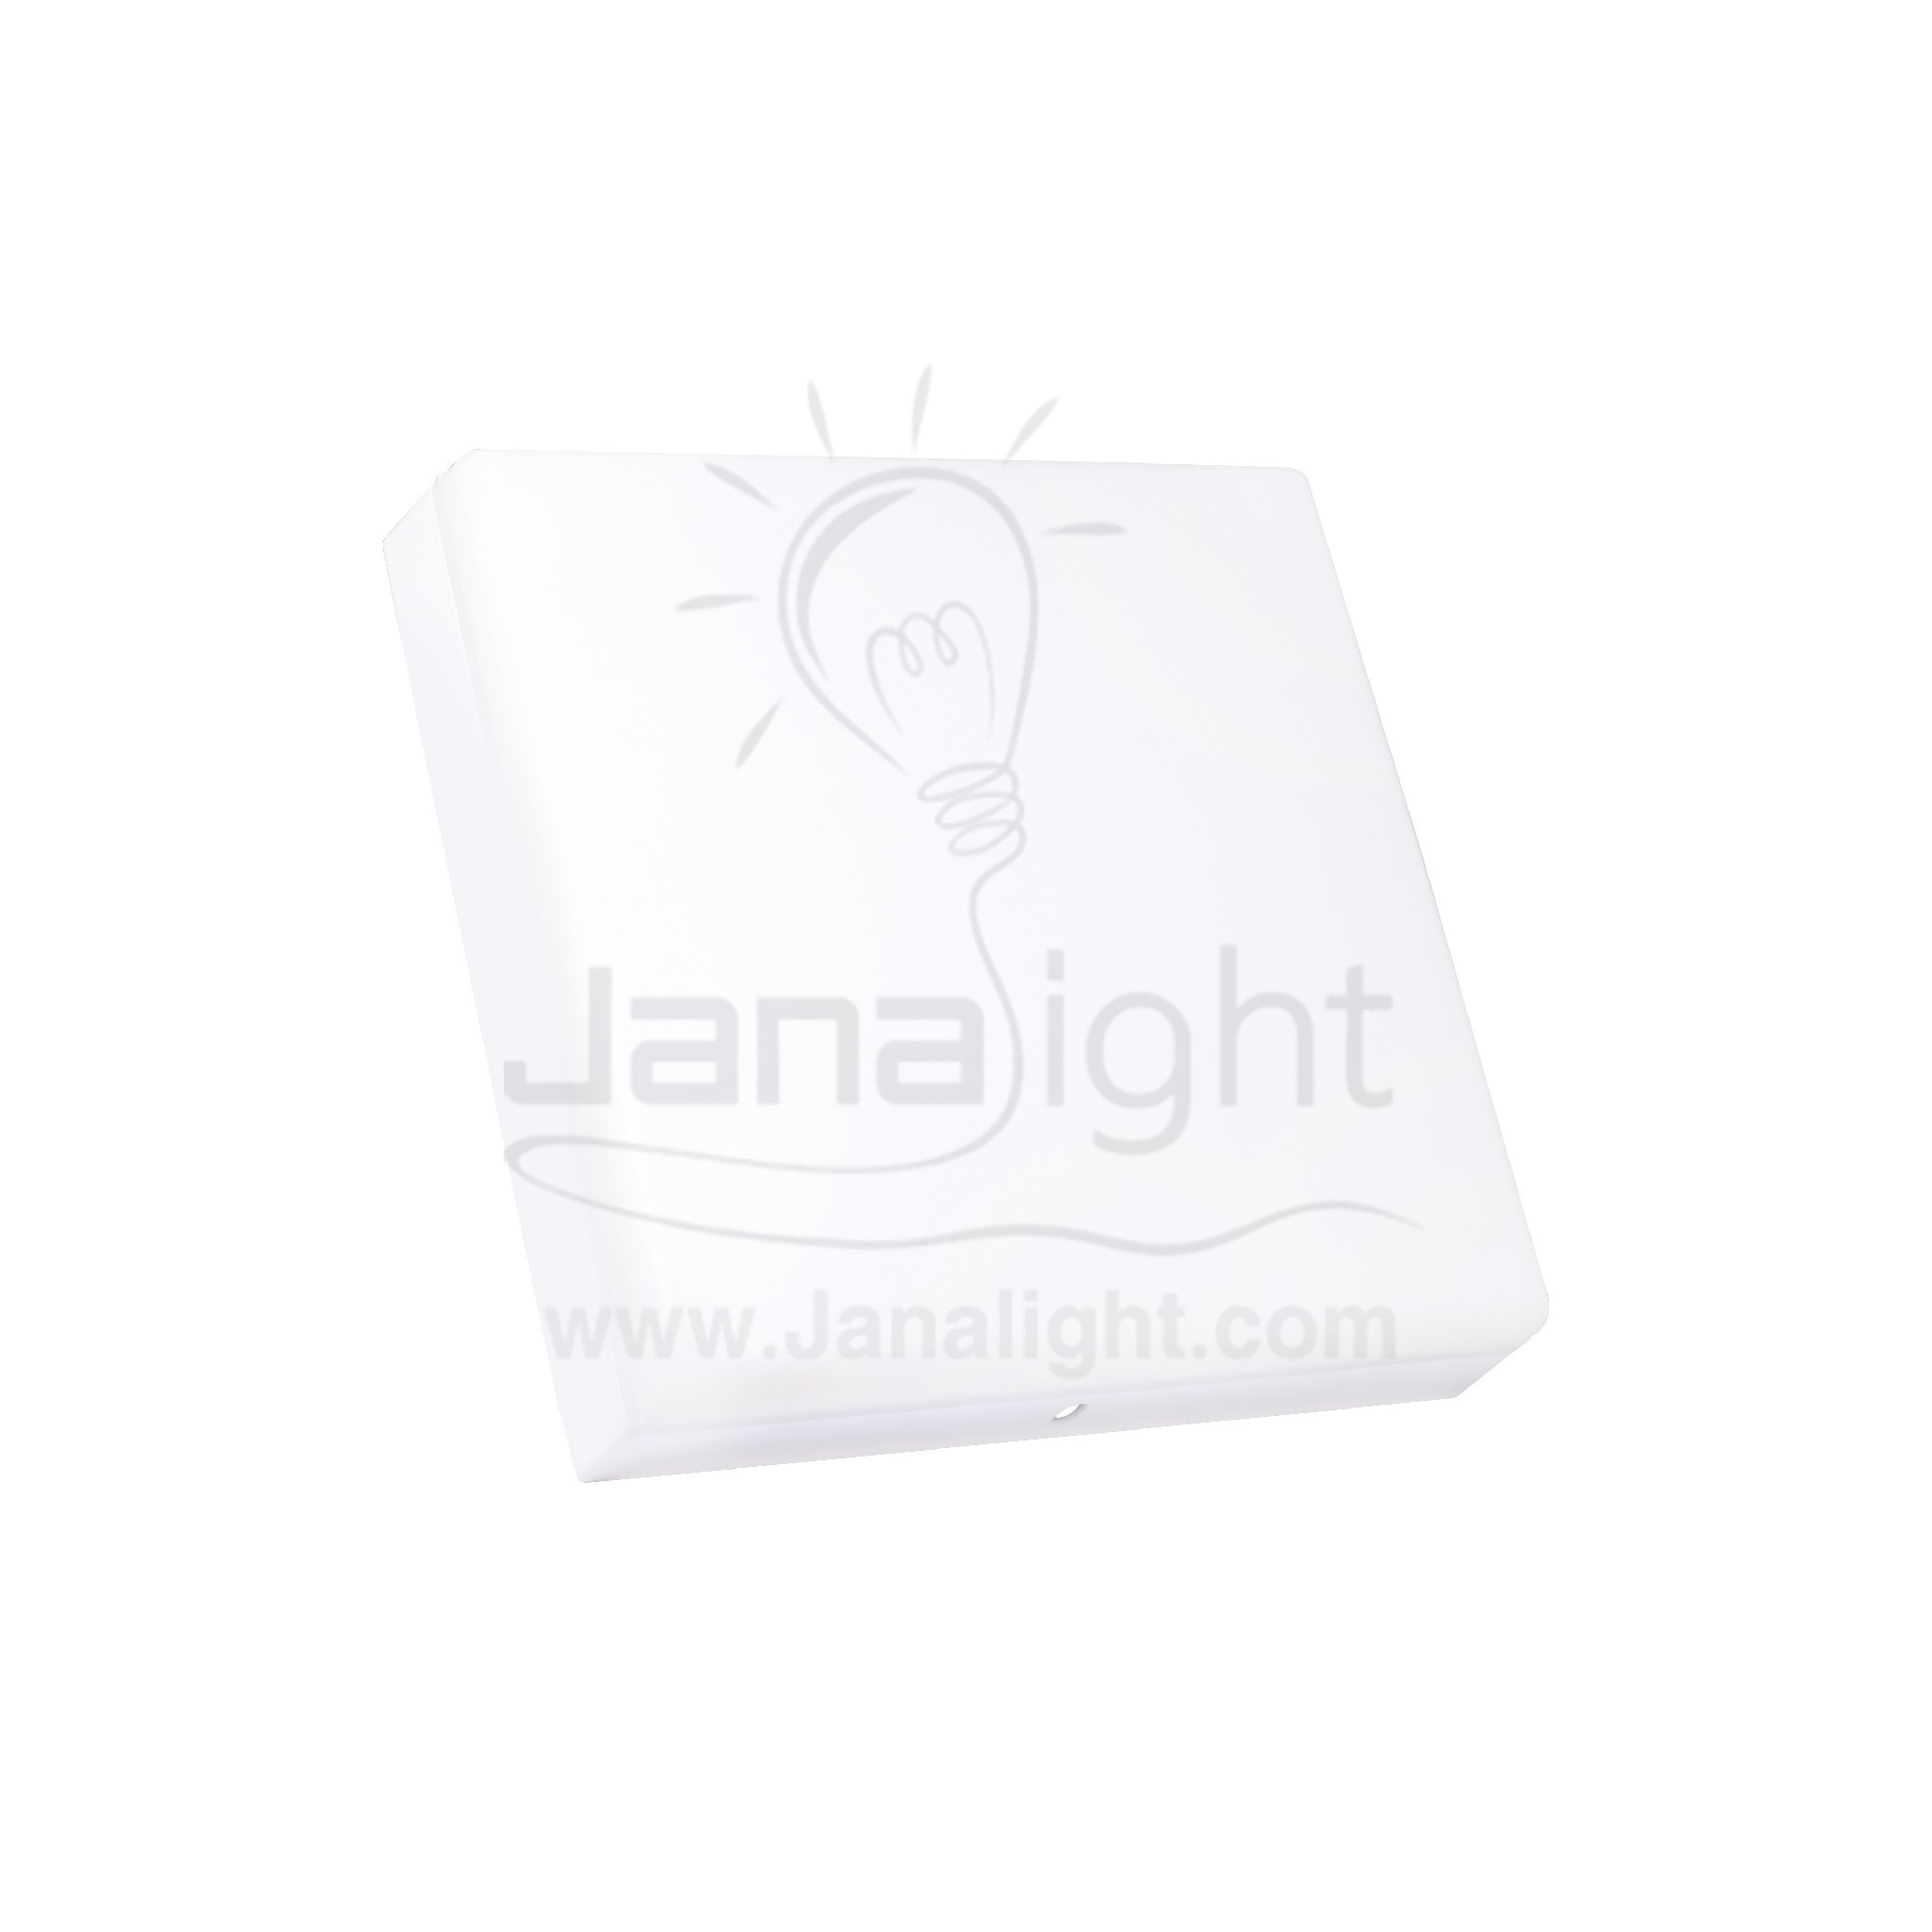 سبوت اكرليك SMD لطش 24 وات مربع ابيض outside panel acrylic cover square surface light 17 cm